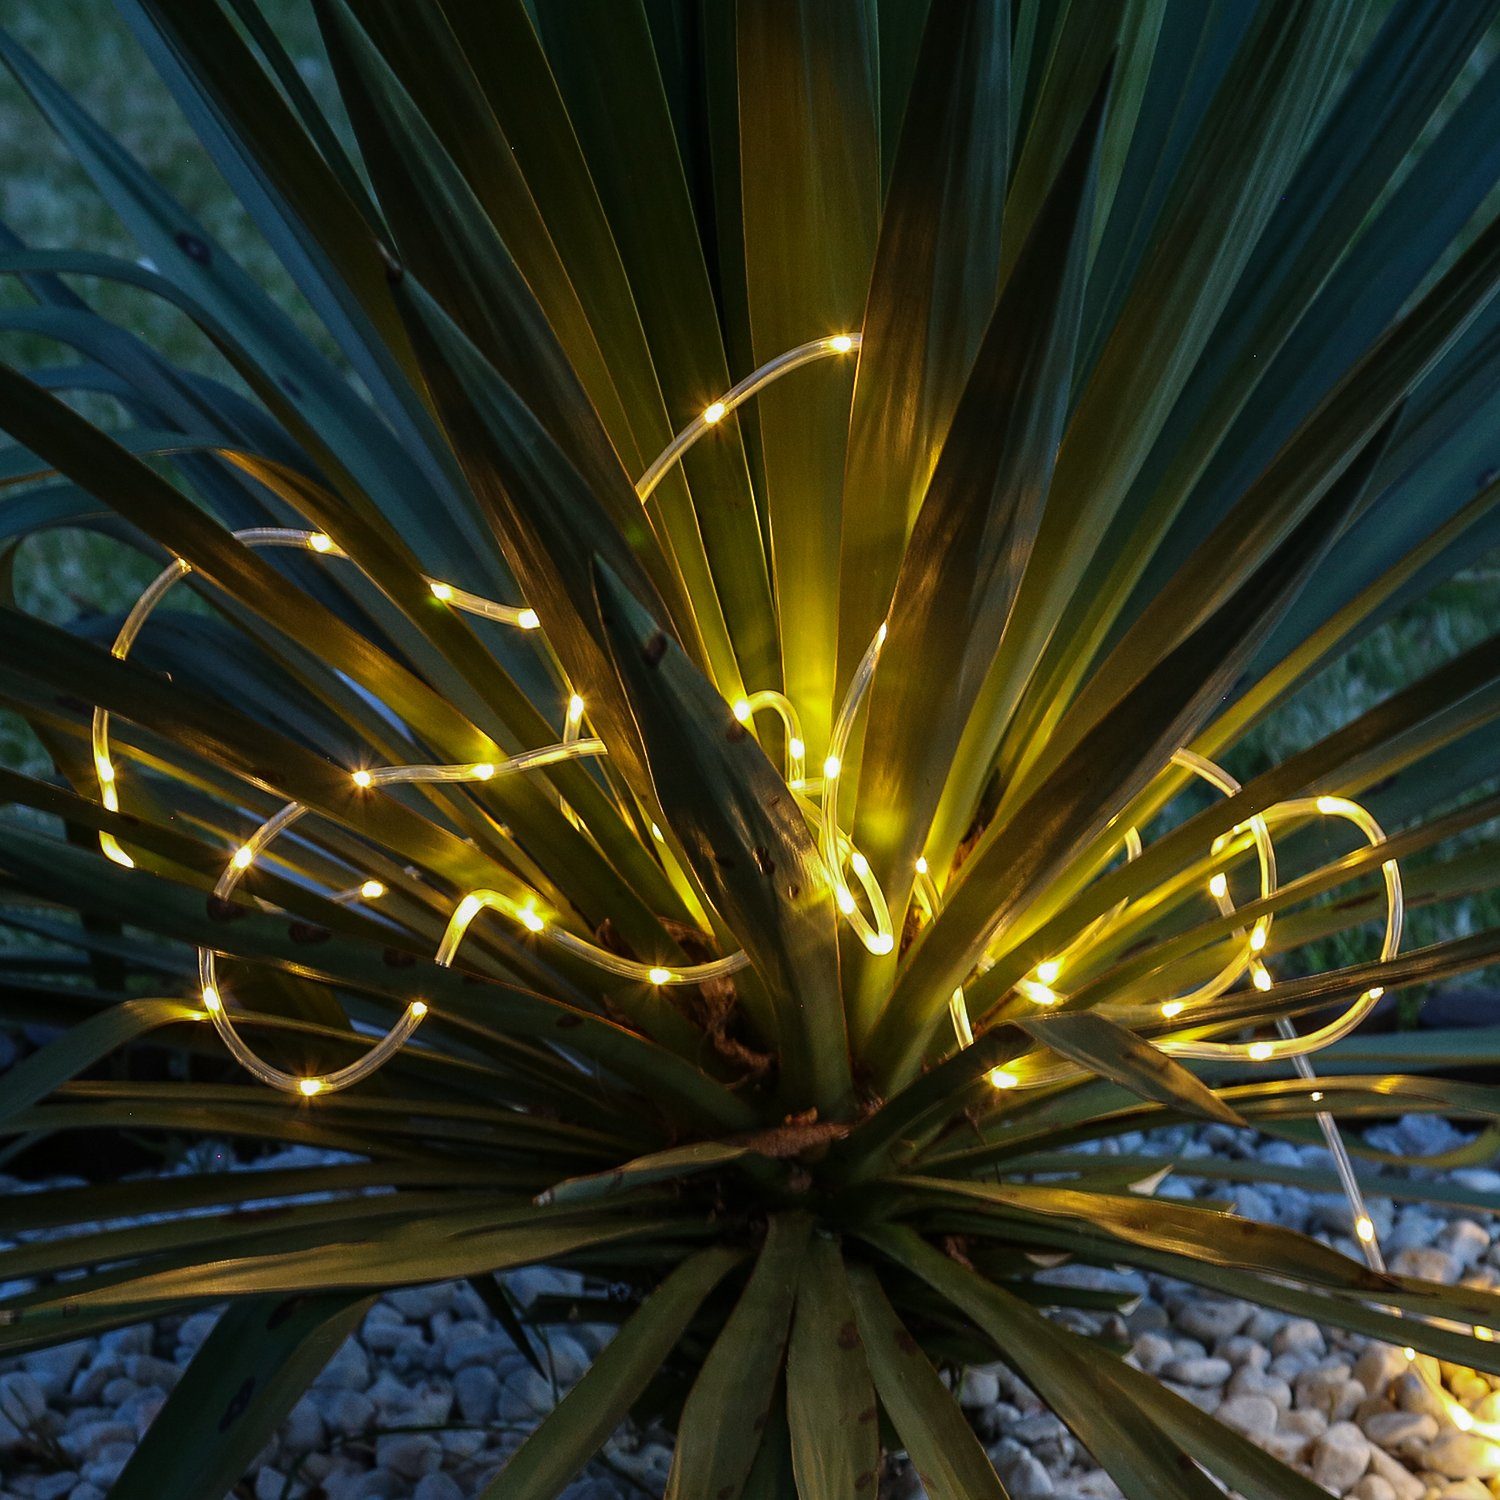 MARELIDA LED-Lichterschlauch LED Solar Lichterschlauch warmweiß Außen Gartenlichterkette 2,5m, 50-flammig